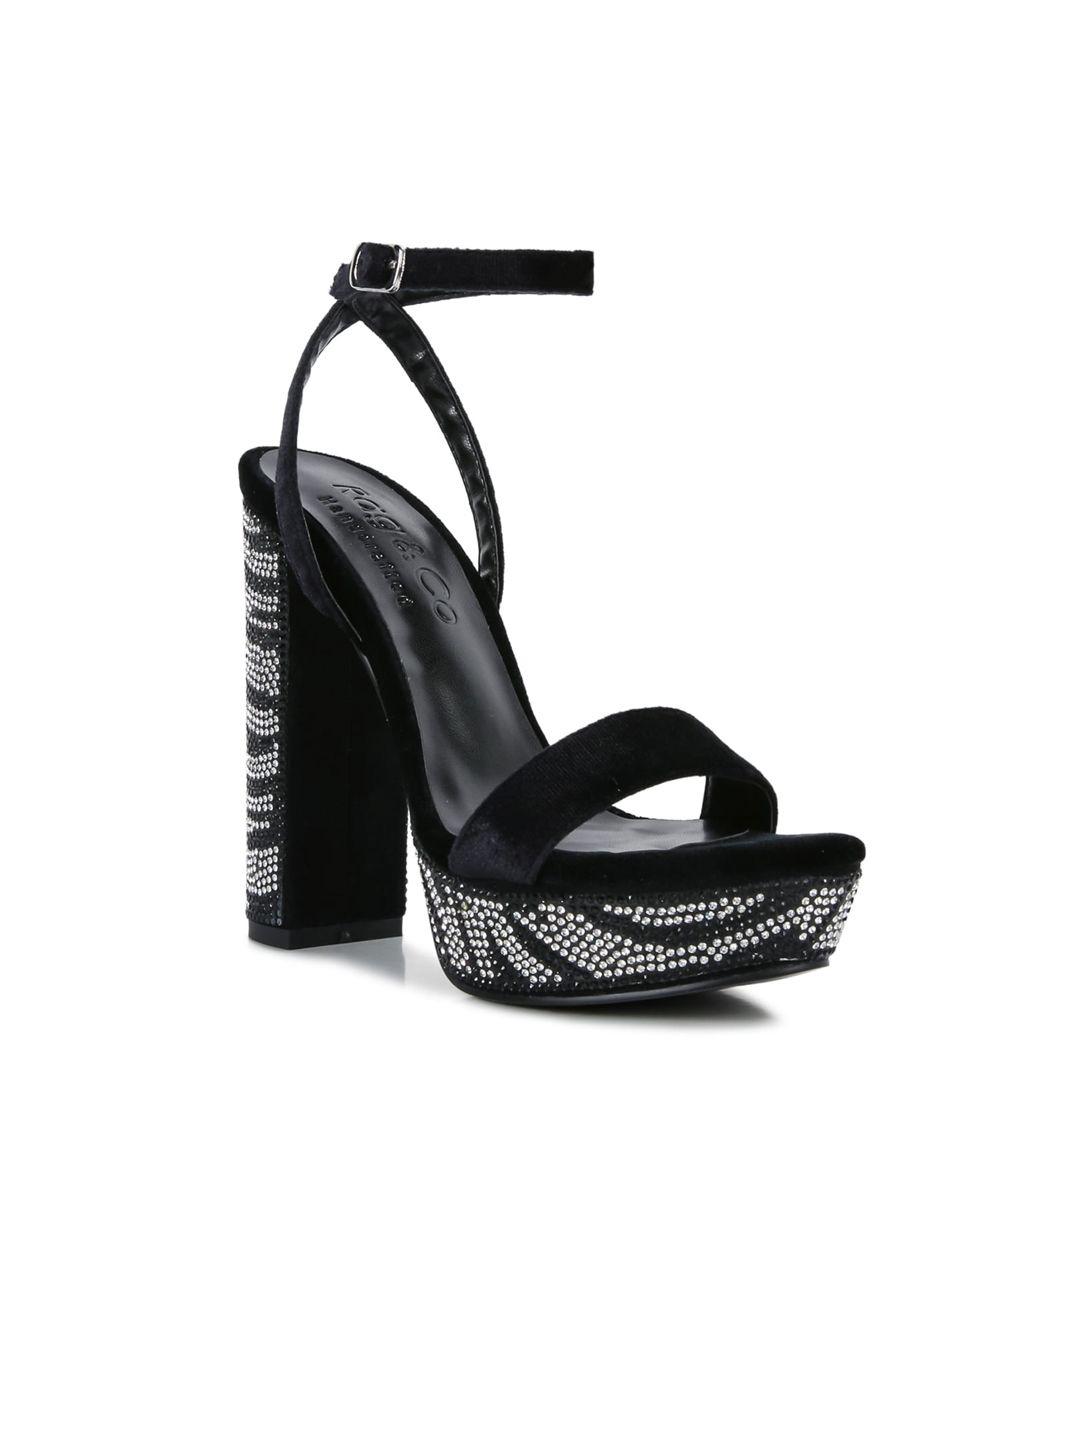 rag & co black velvet embellished block sandals heels